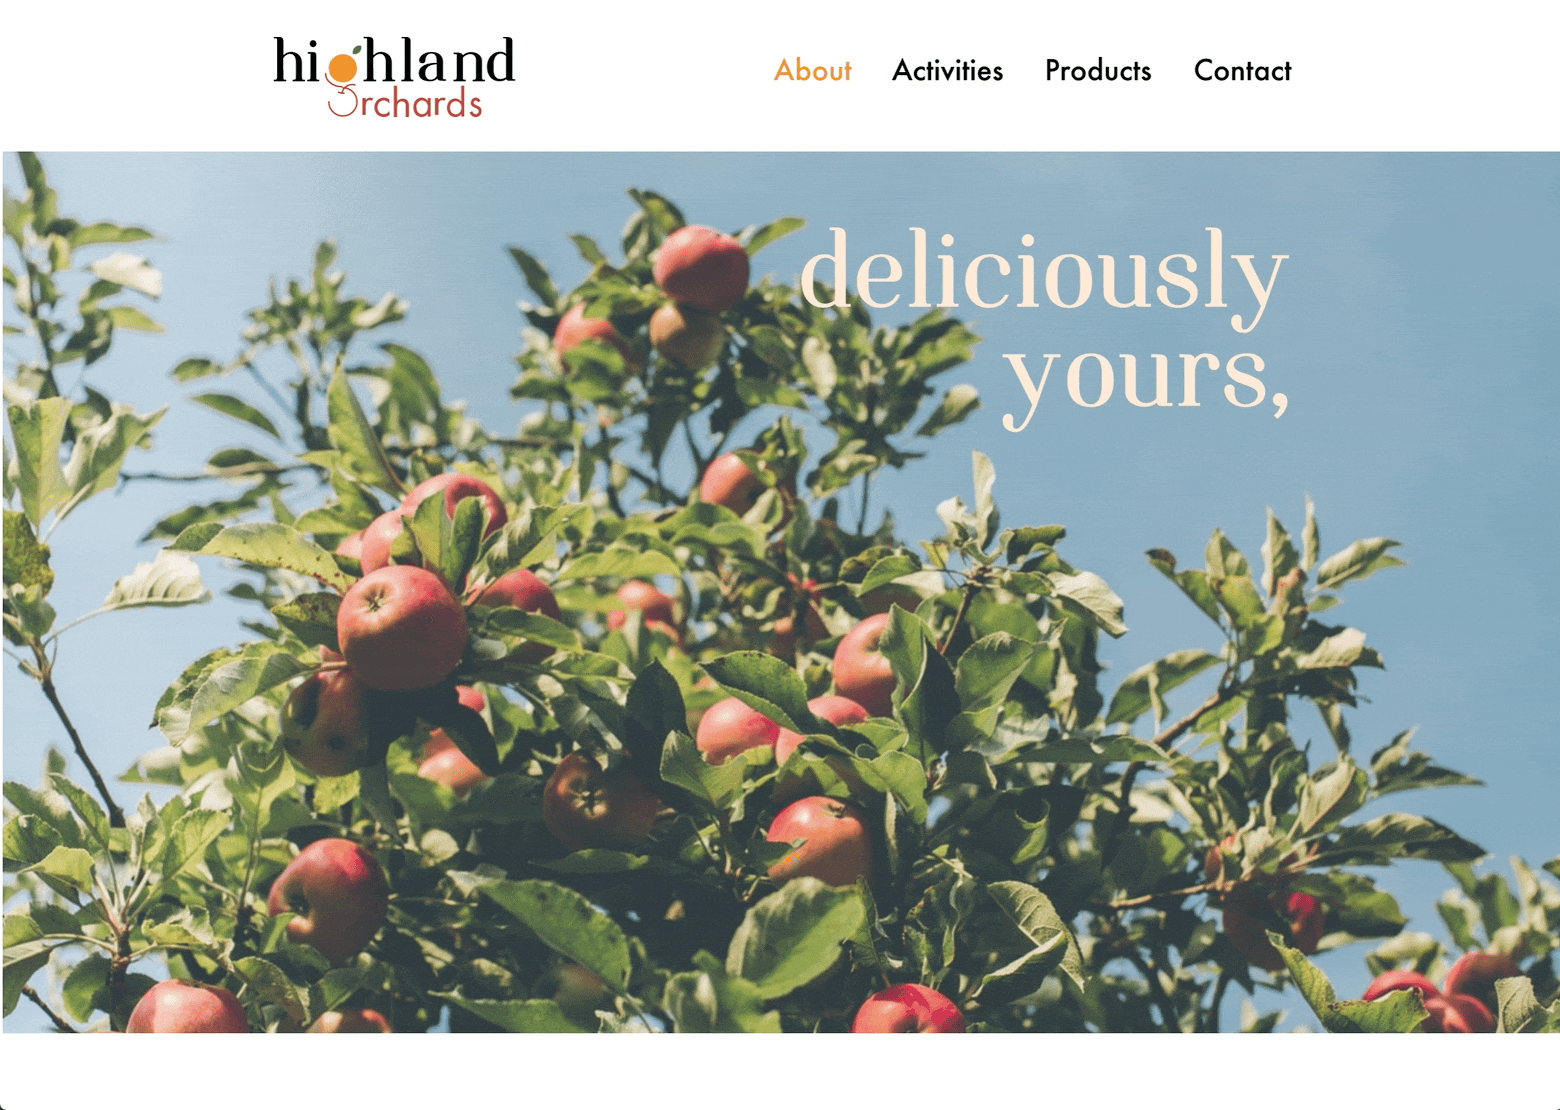 highland orchards rebrand website design video